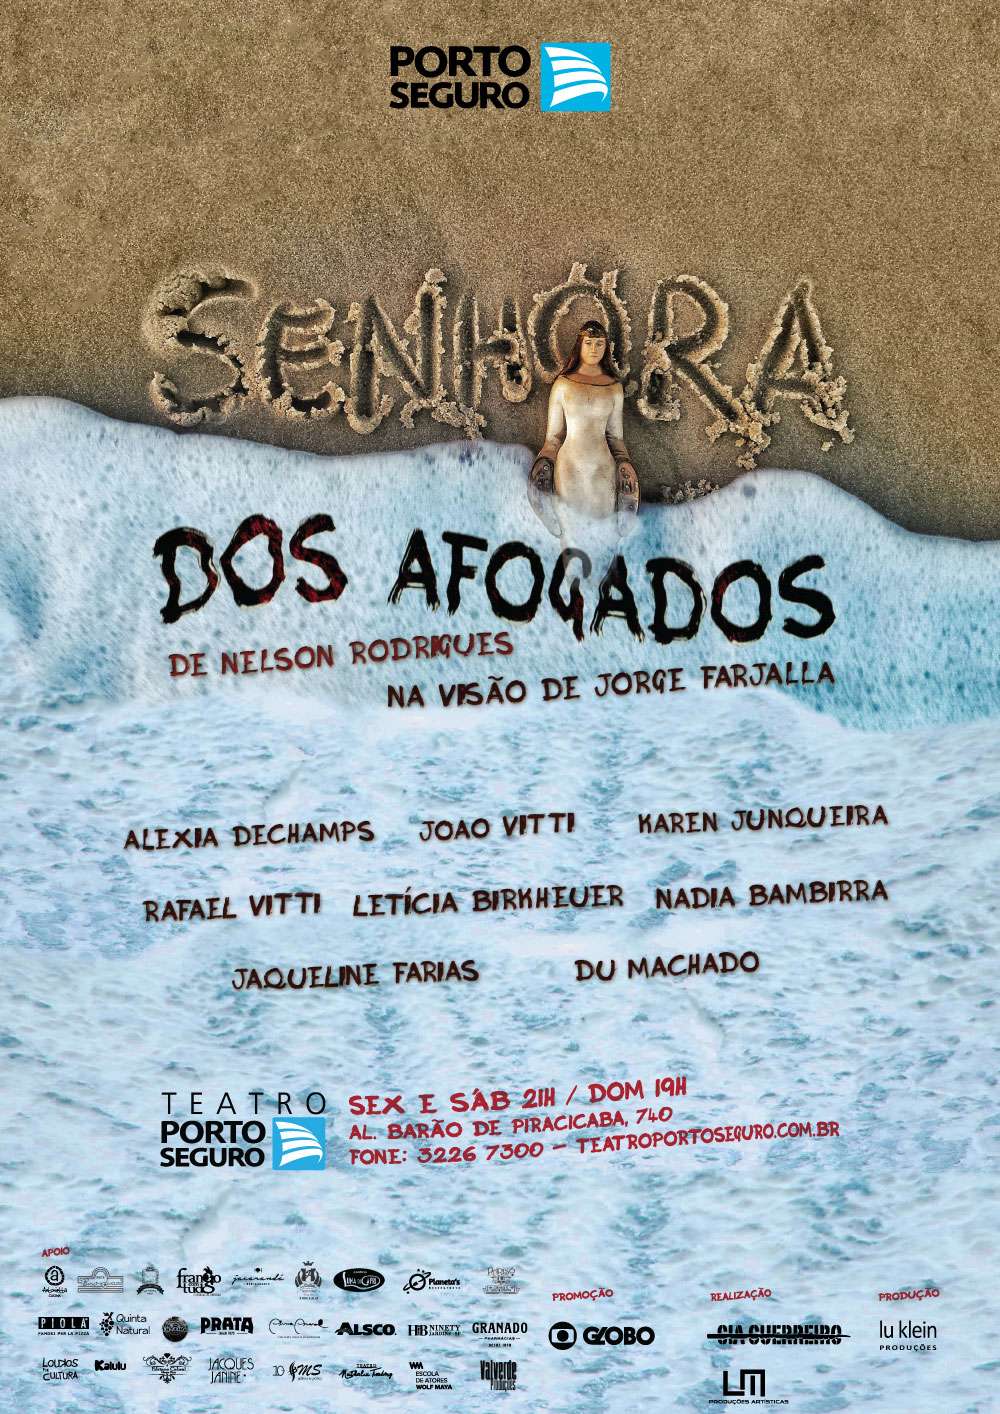 Dica de Teatro – Senhora dos Afogados, de Nelson Rodrigues, no Teatro Porto Seguro, a partir de 23 de fevereiro